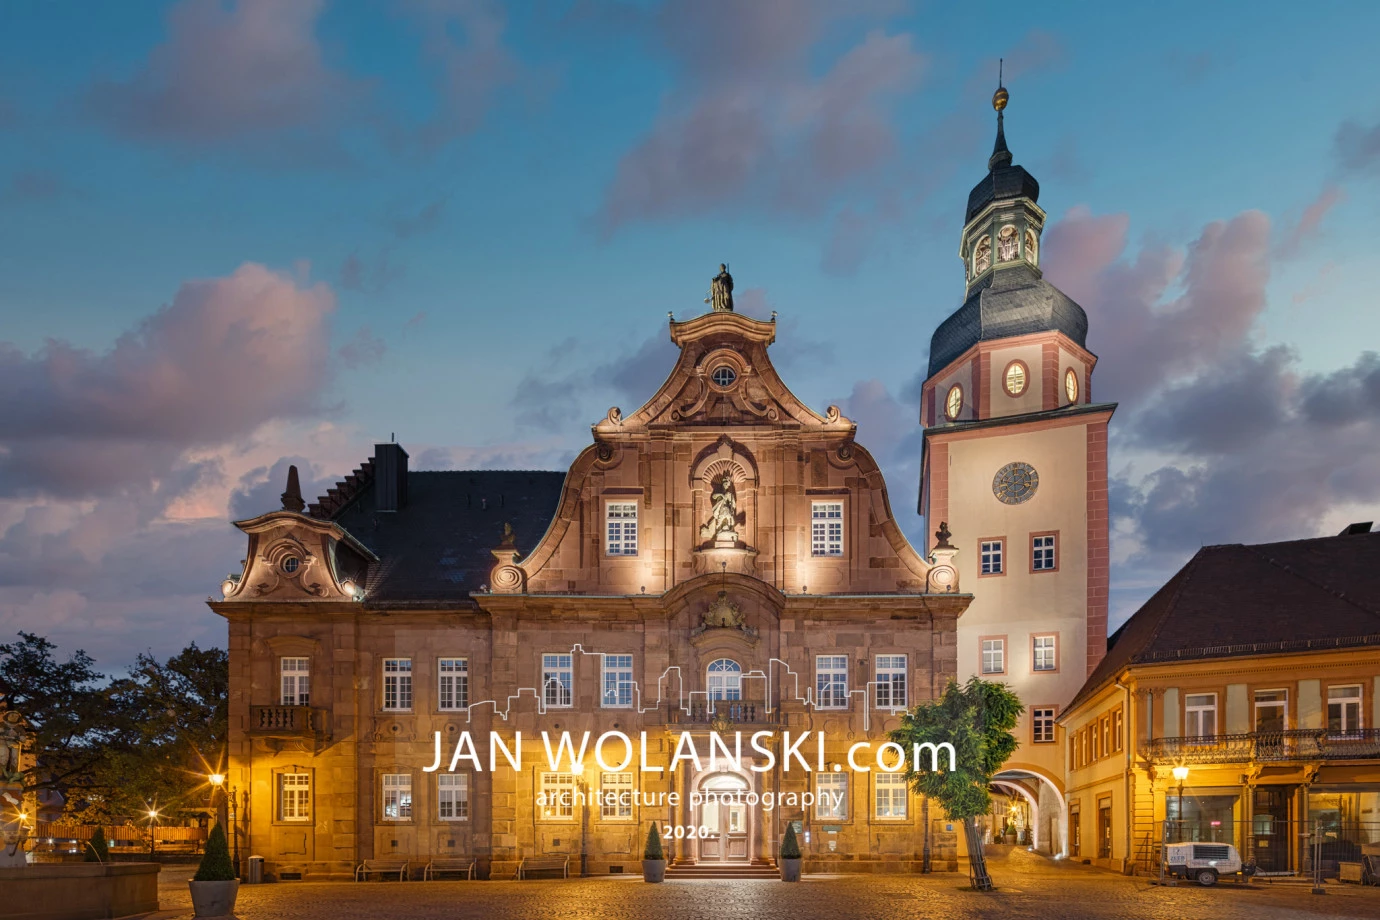 zdjęcia wroclaw fotograf jan-wolanski portfolio zdjecia architektury budynkow